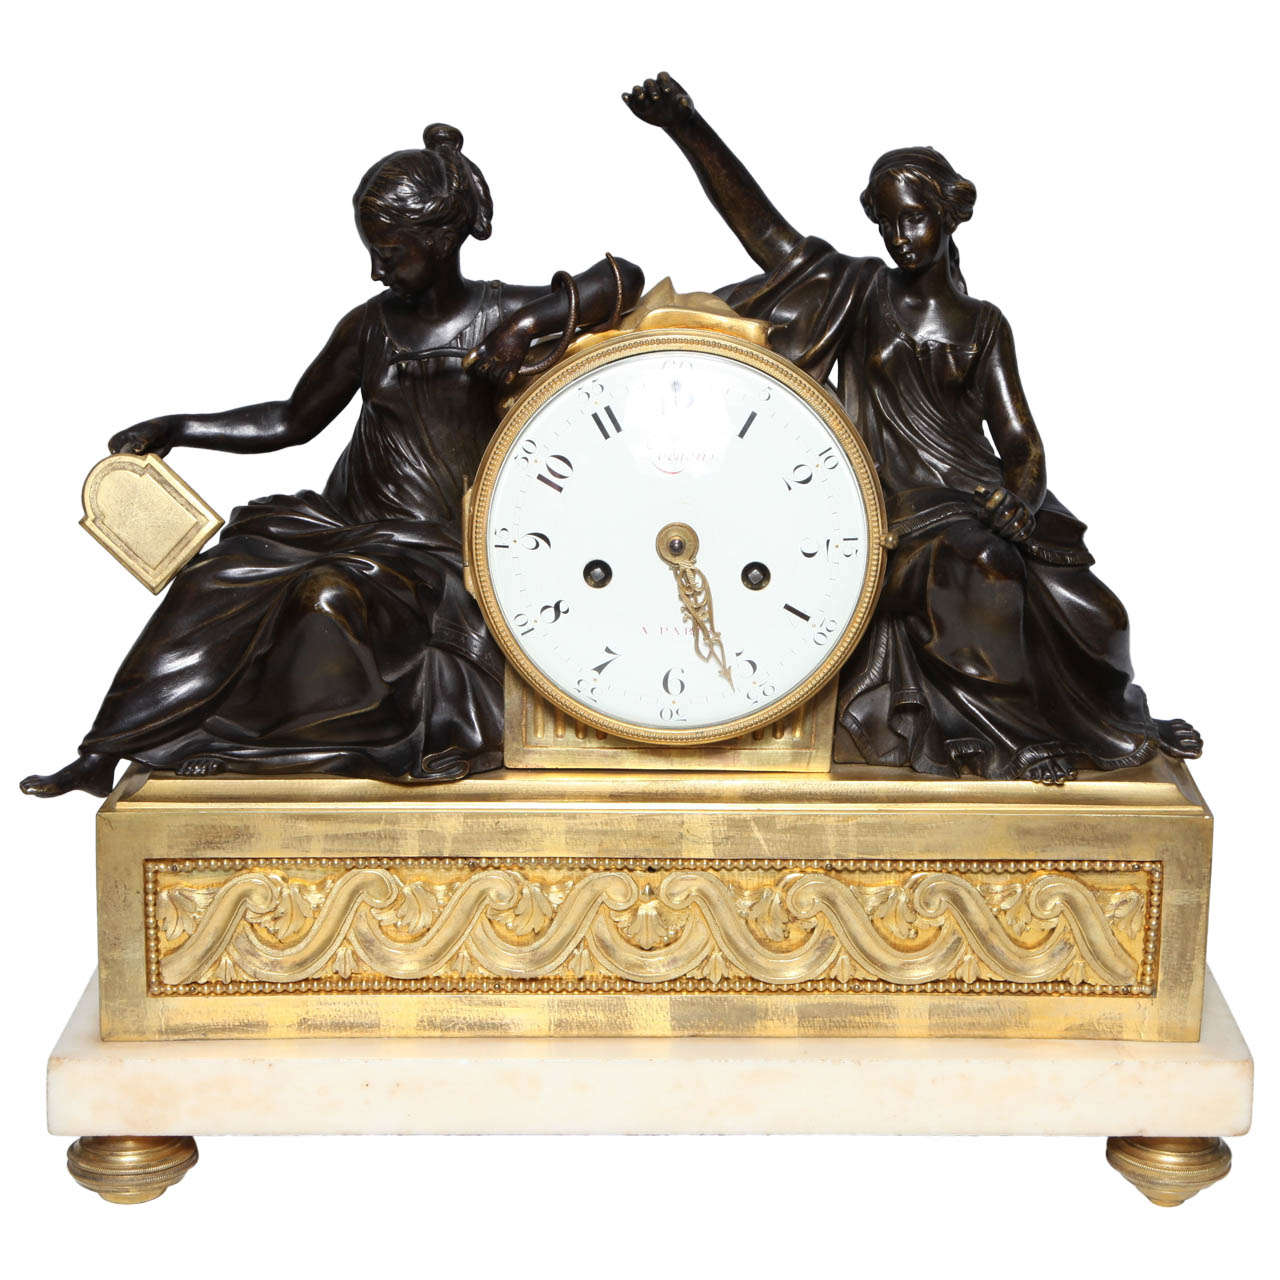 Horloge figurative française d'époque Louis XVI, patinée et montée sur bronze doré